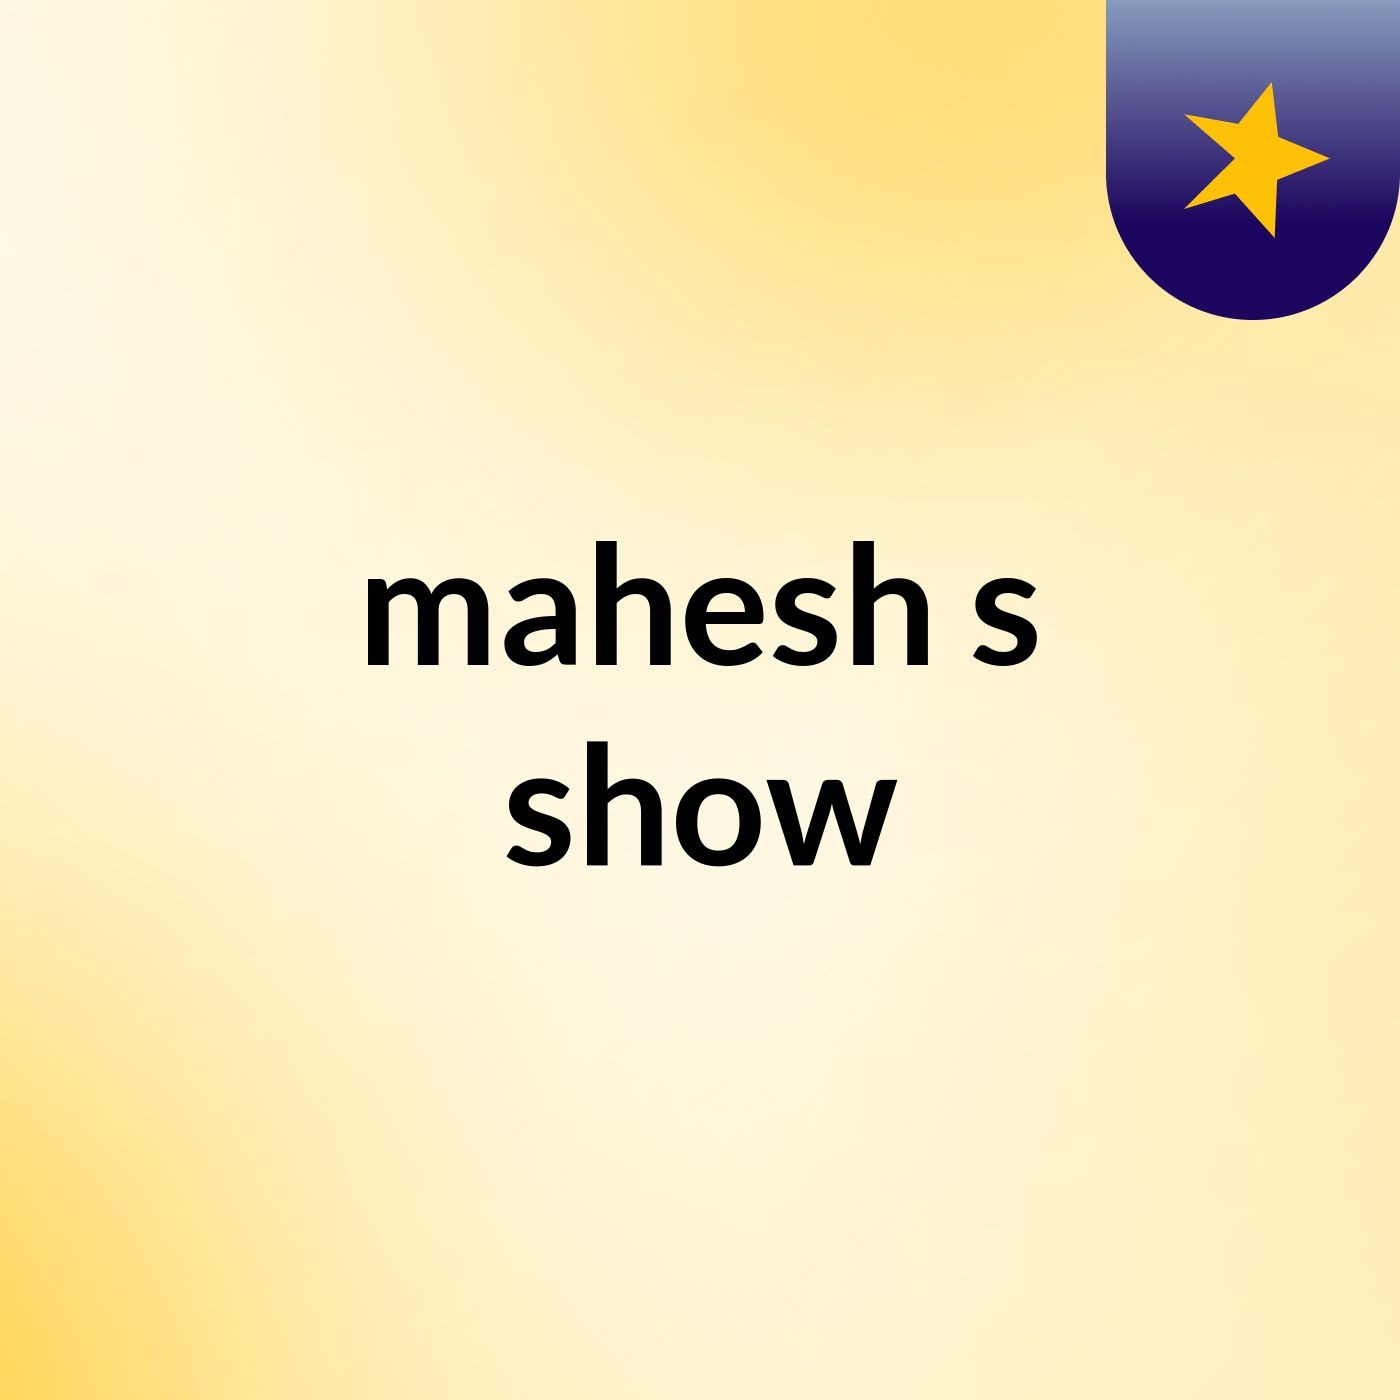 mahesh's show